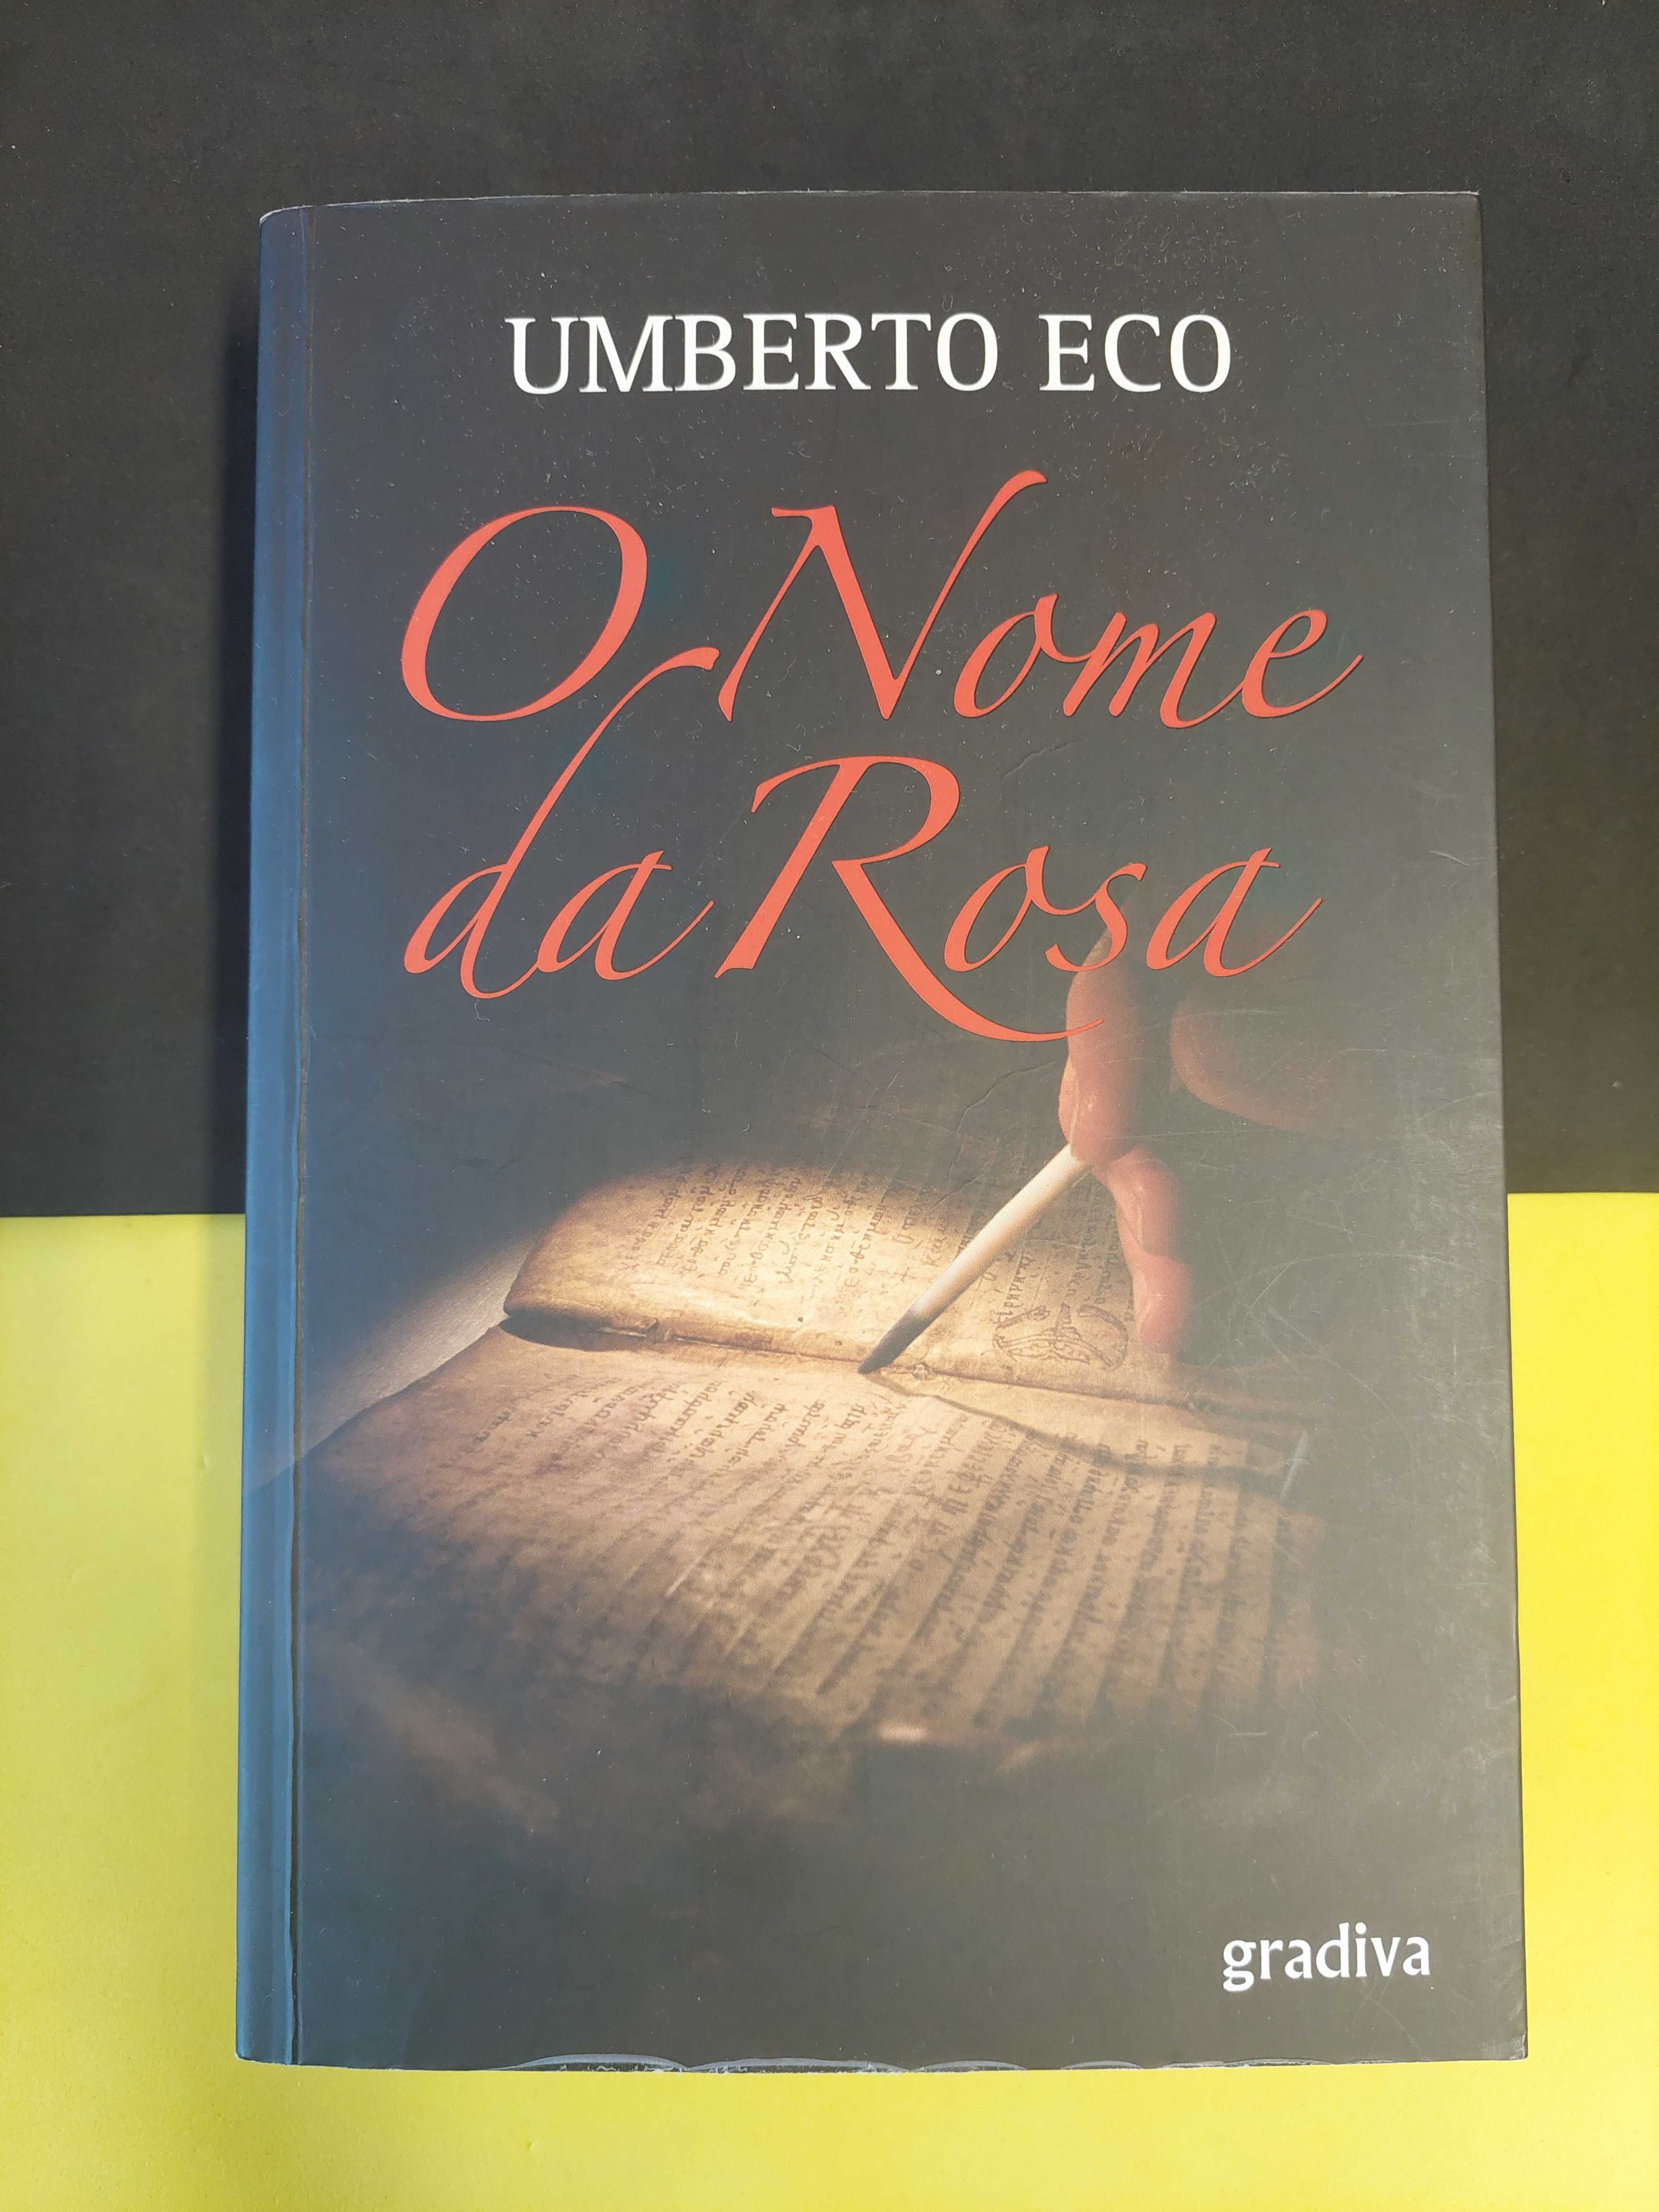 Umberto Eco - O Nome da Rosa